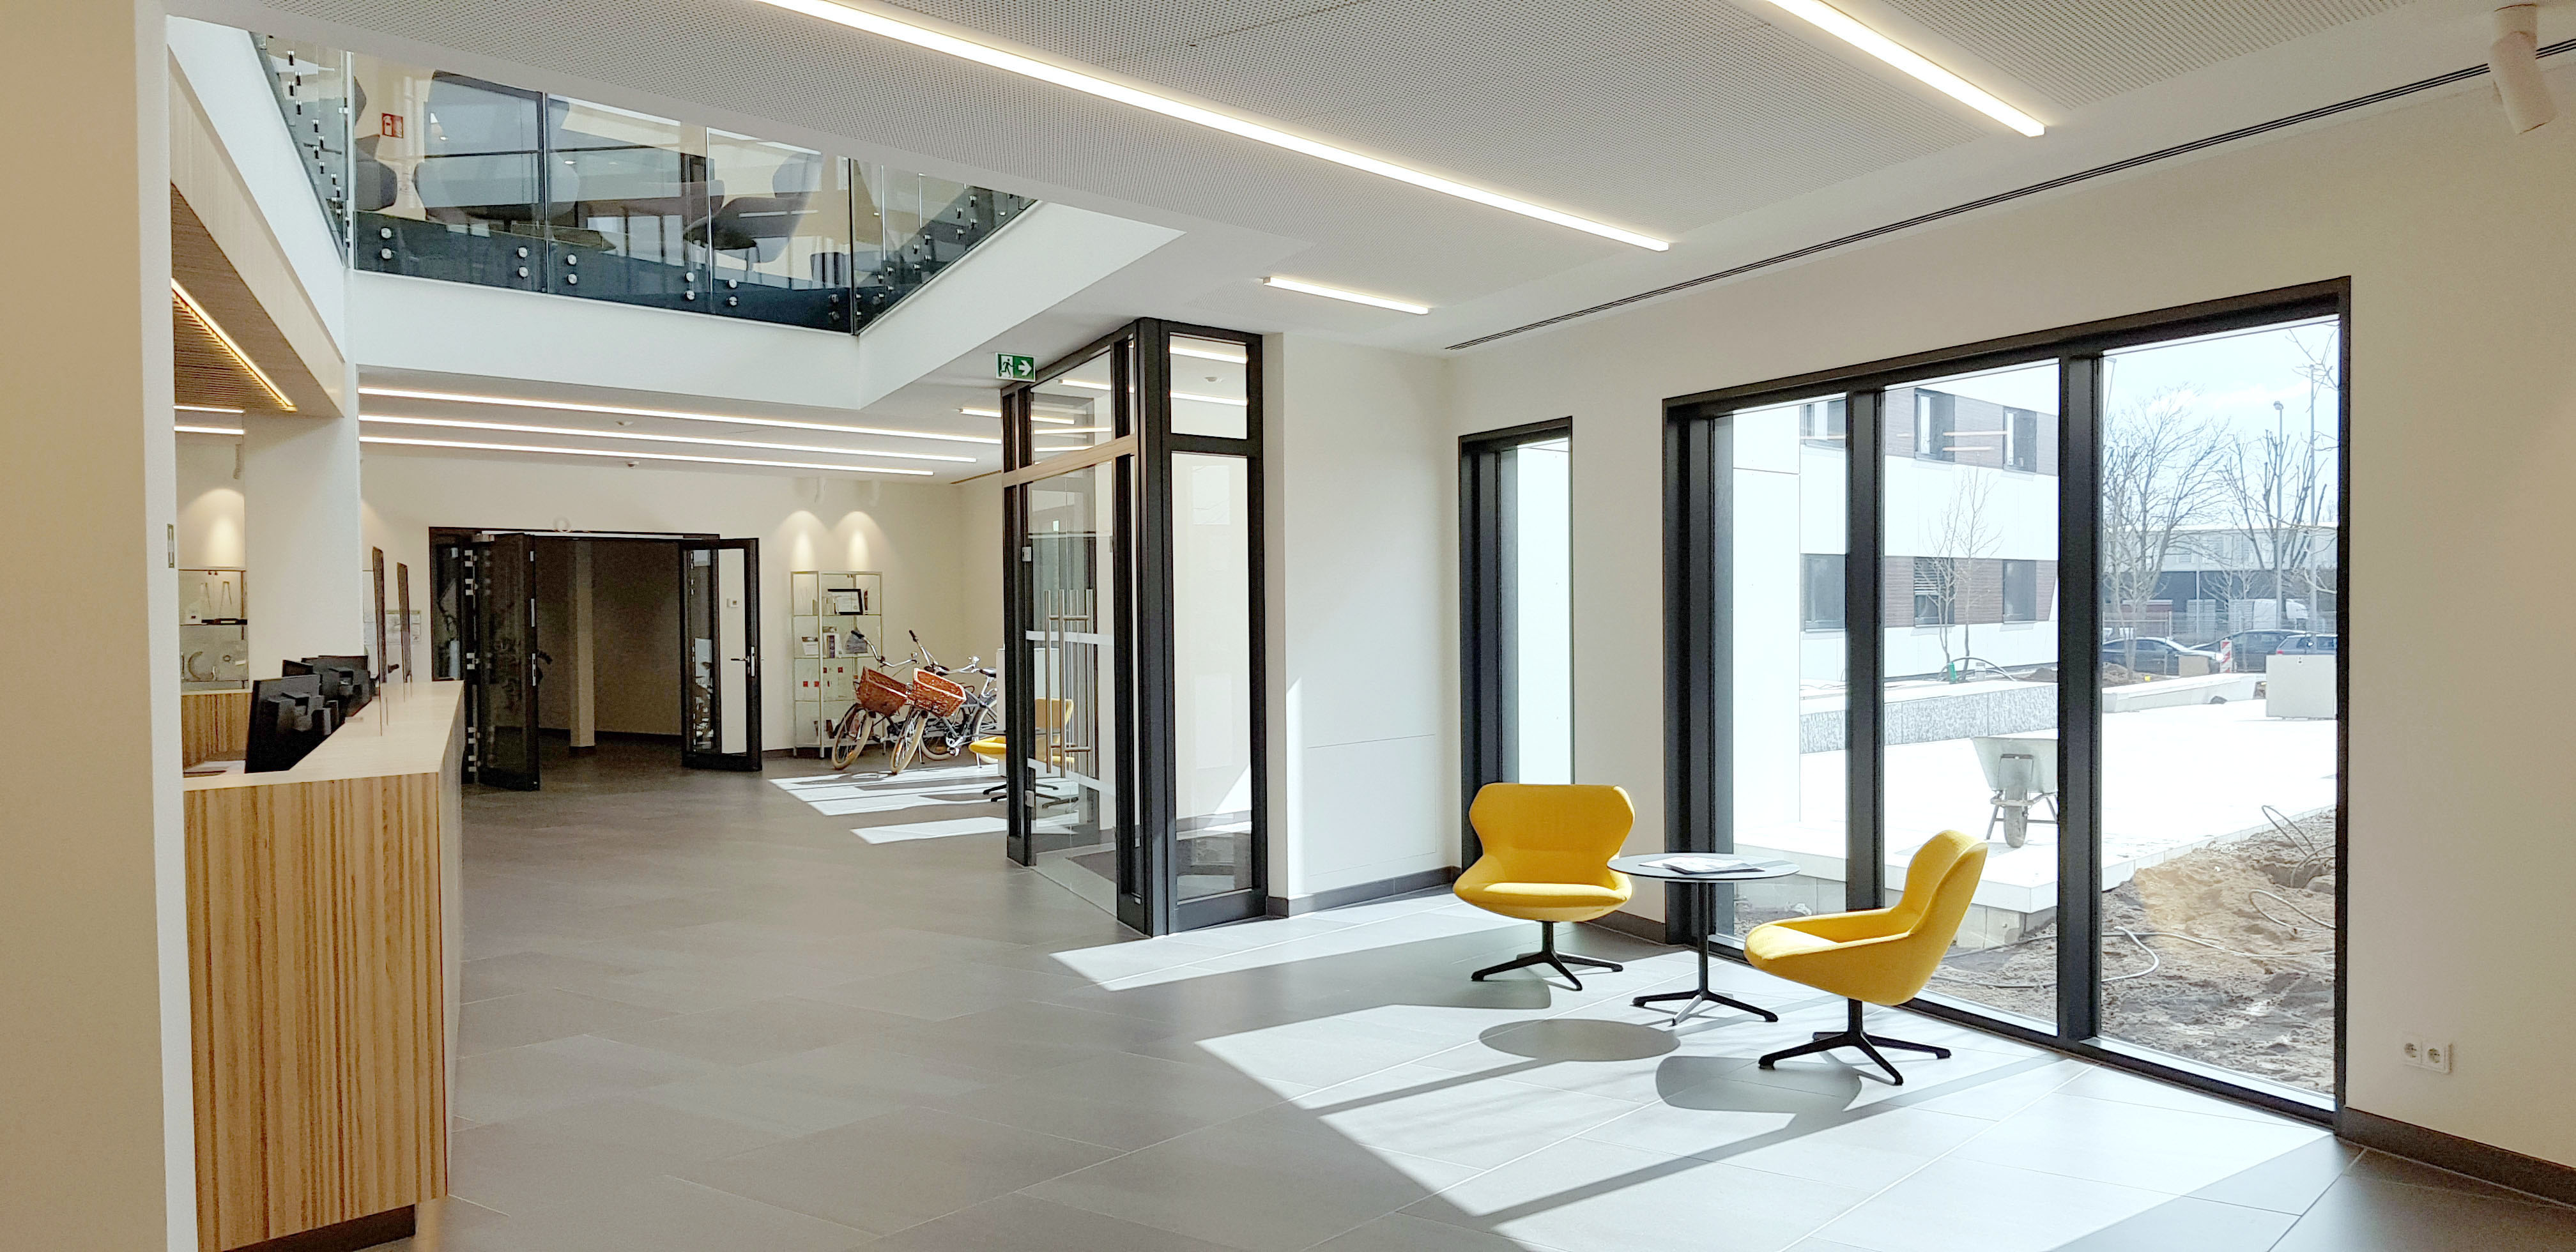 Bensch Horezky Design und Innenarchitekturleistungen - SVA Foyer_02.jpg